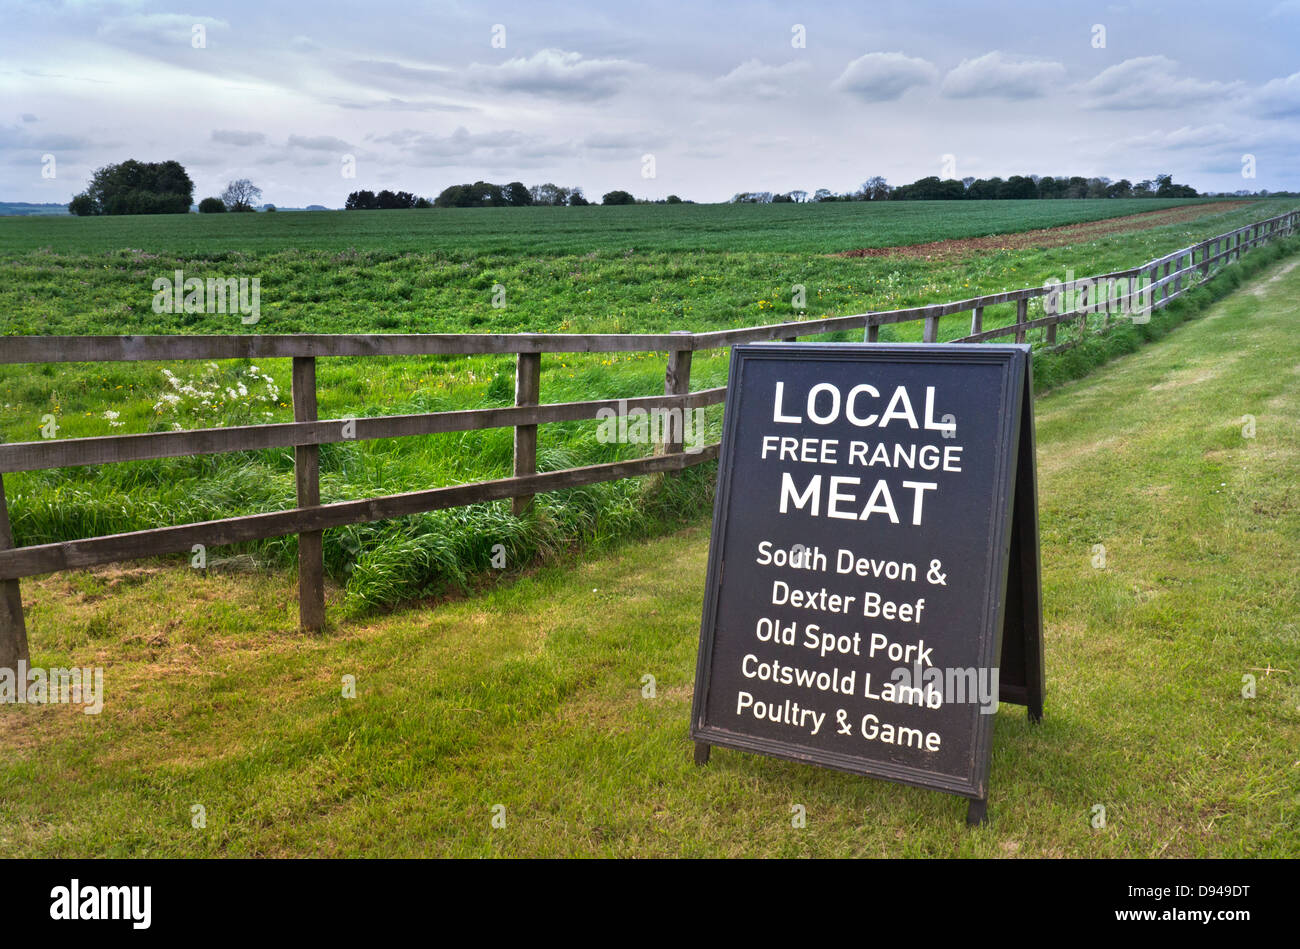 Freie STRECKE FLEISCH LOKALE BRITISCHE PRODUKTE Zeichen außerhalb des ländlichen Cotswolds Hofladen Förderung lokaler freier Bereich Fleisch, einschließlich Rindfleisch Schweinefleisch Lammfleisch Geflügel und Wild Stockfoto